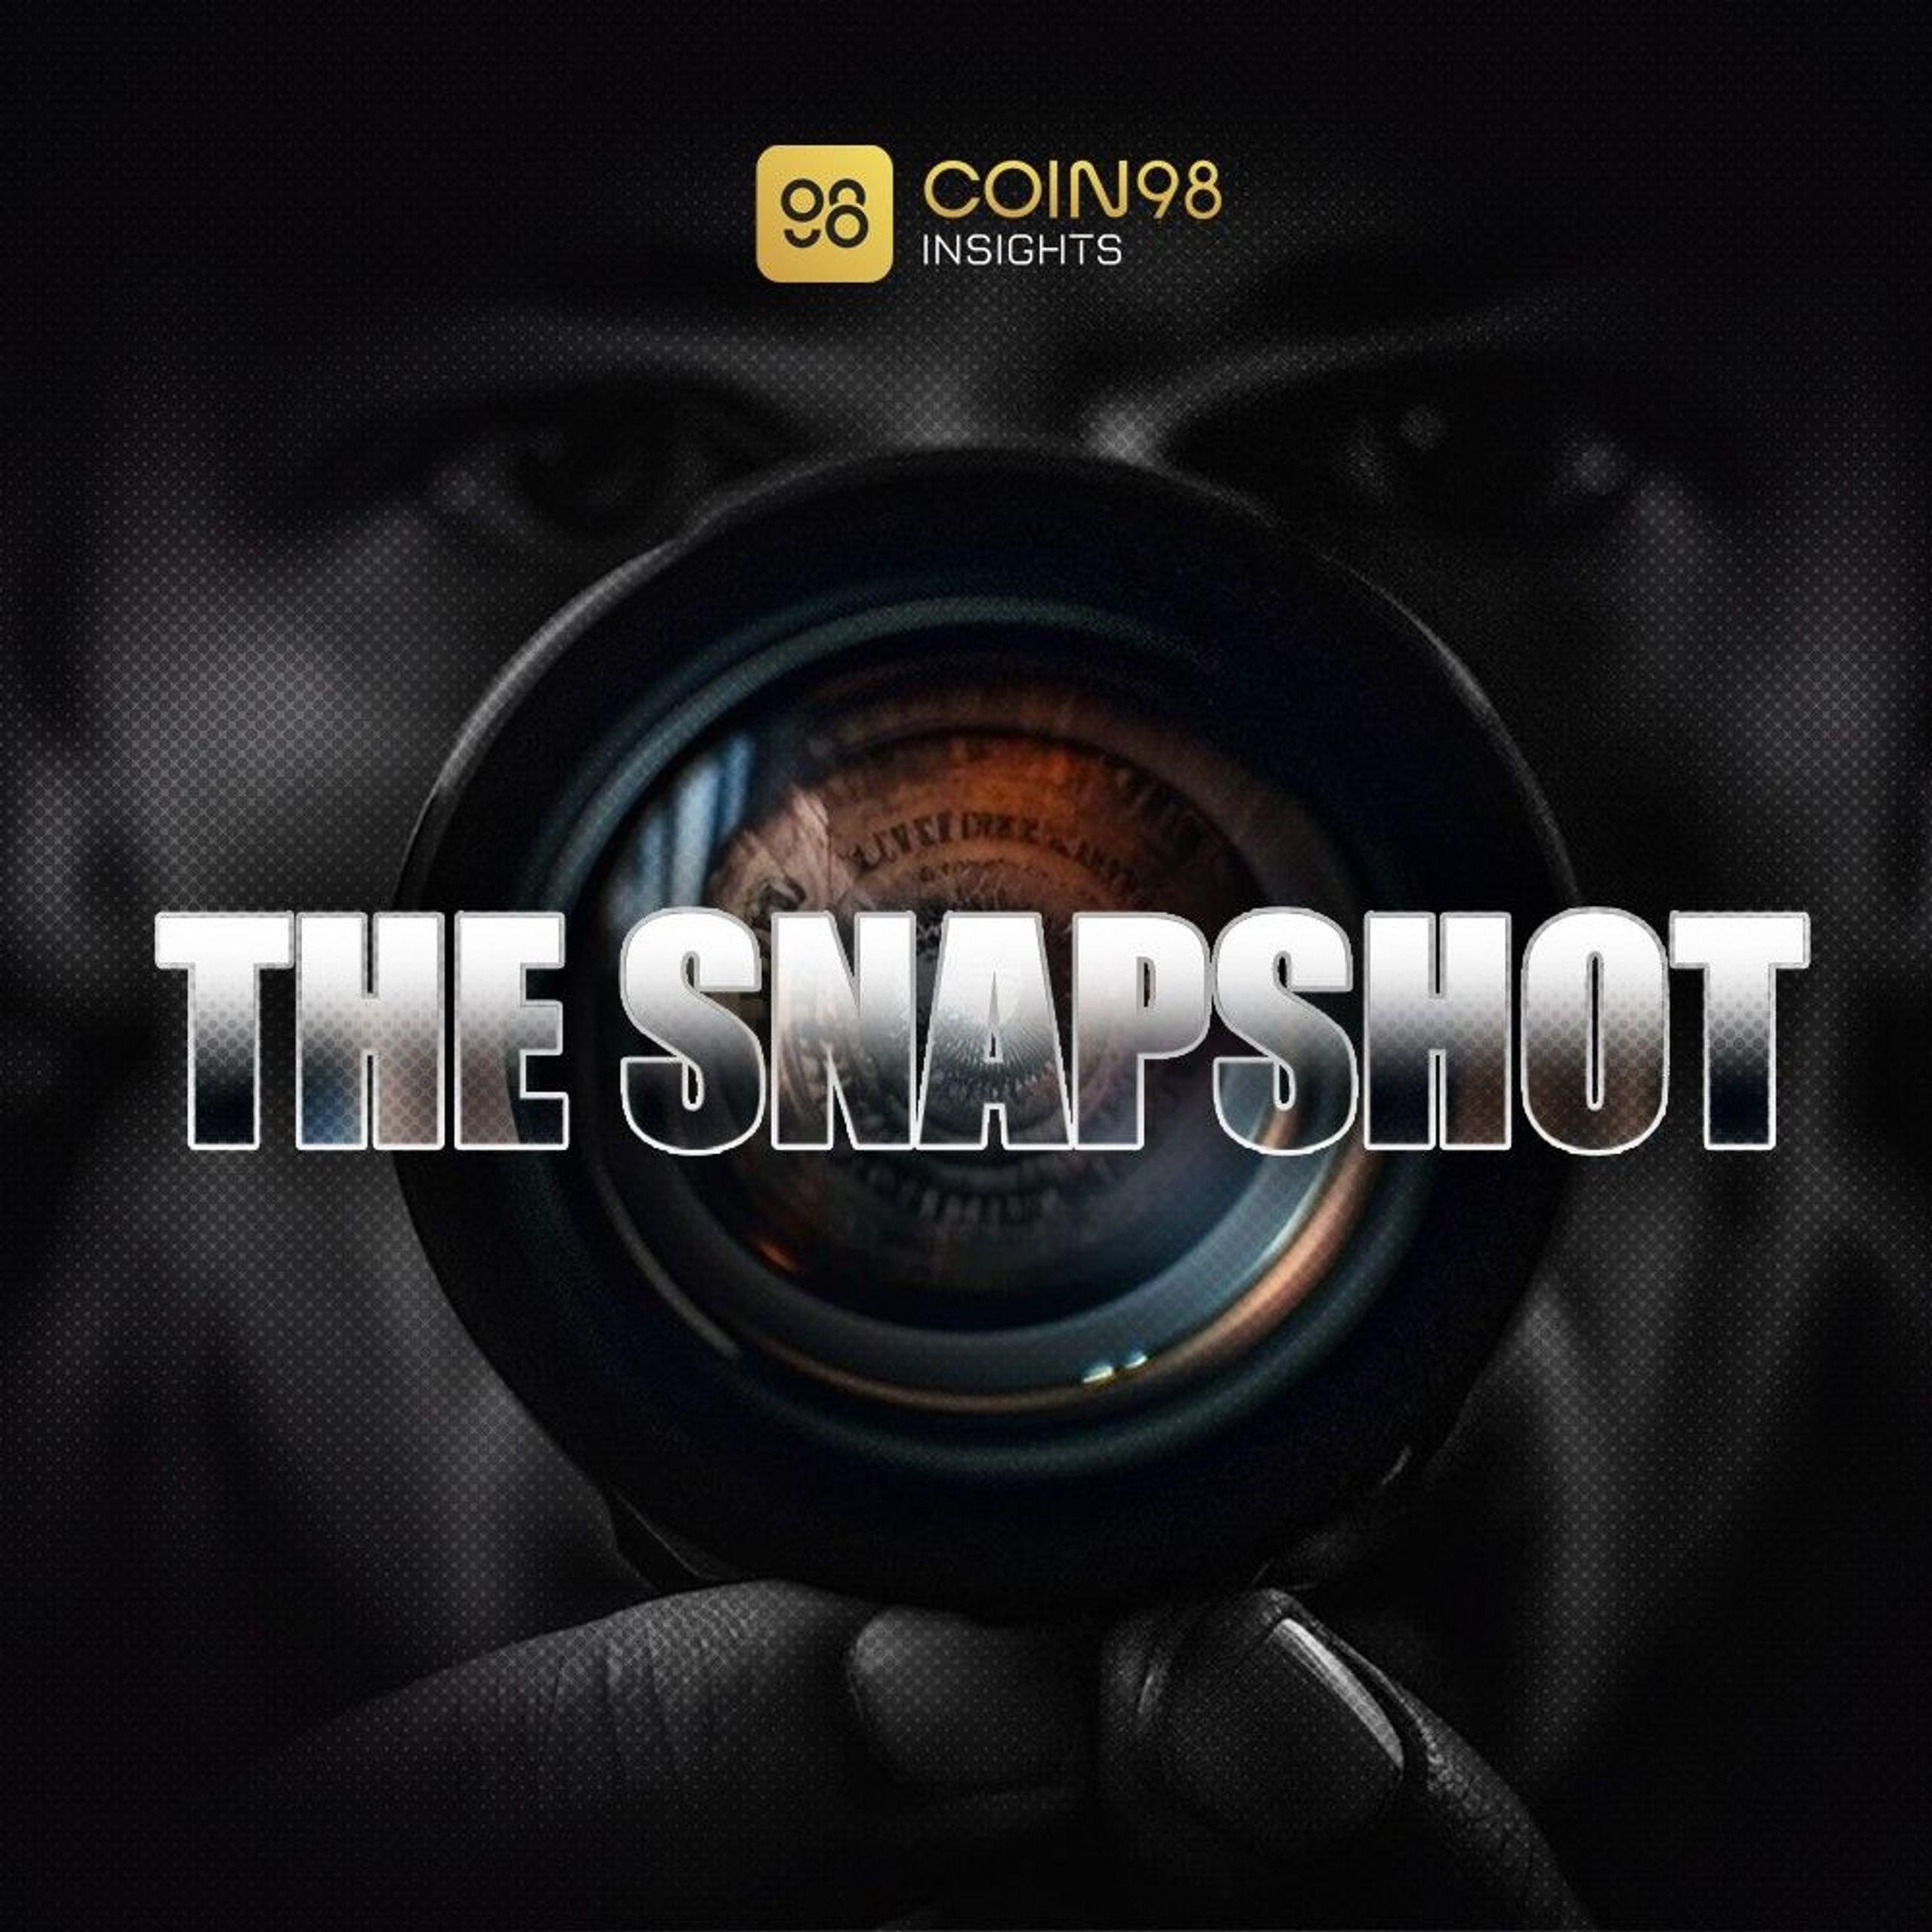 The Snapshot